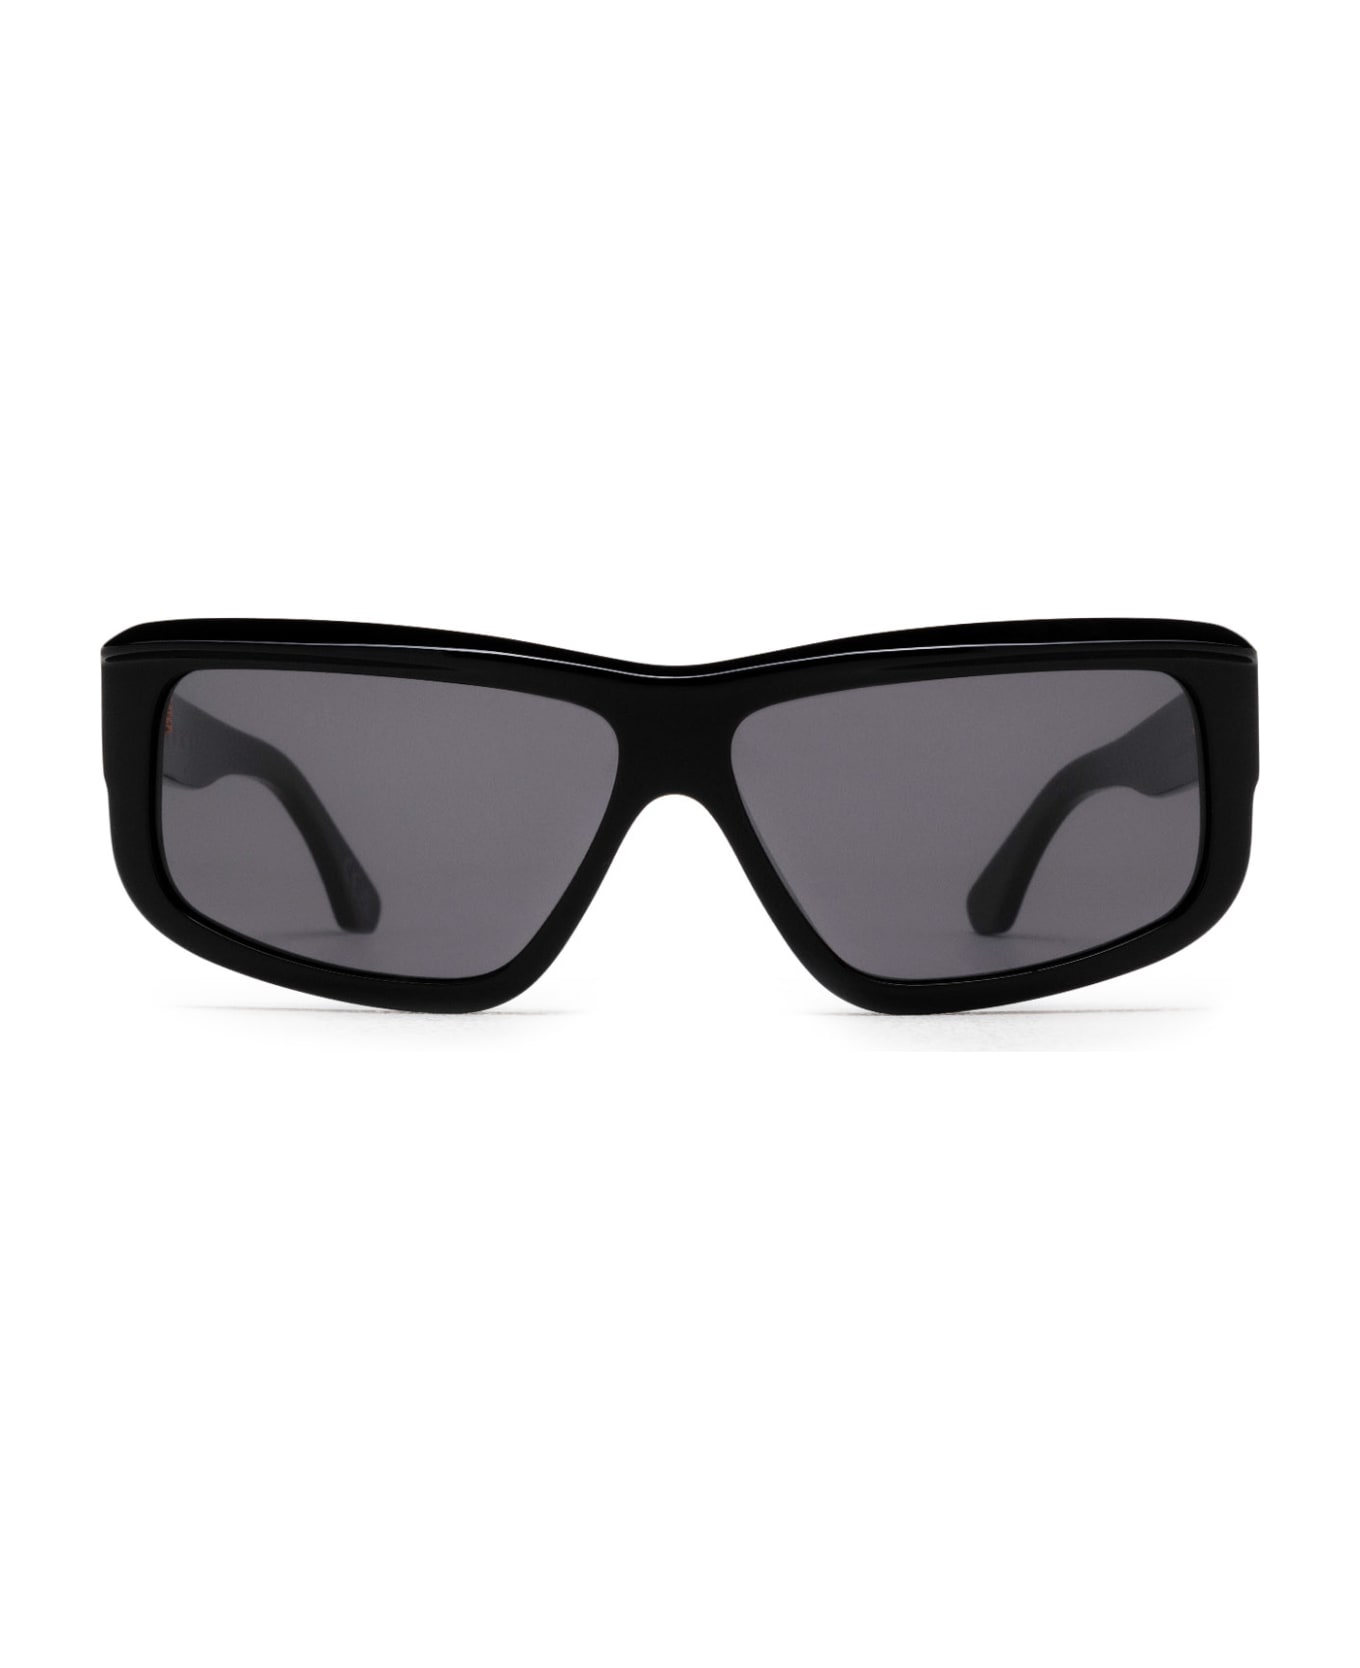 Marni Eyewear Annapuma Circuit Black Sunglasses - Black